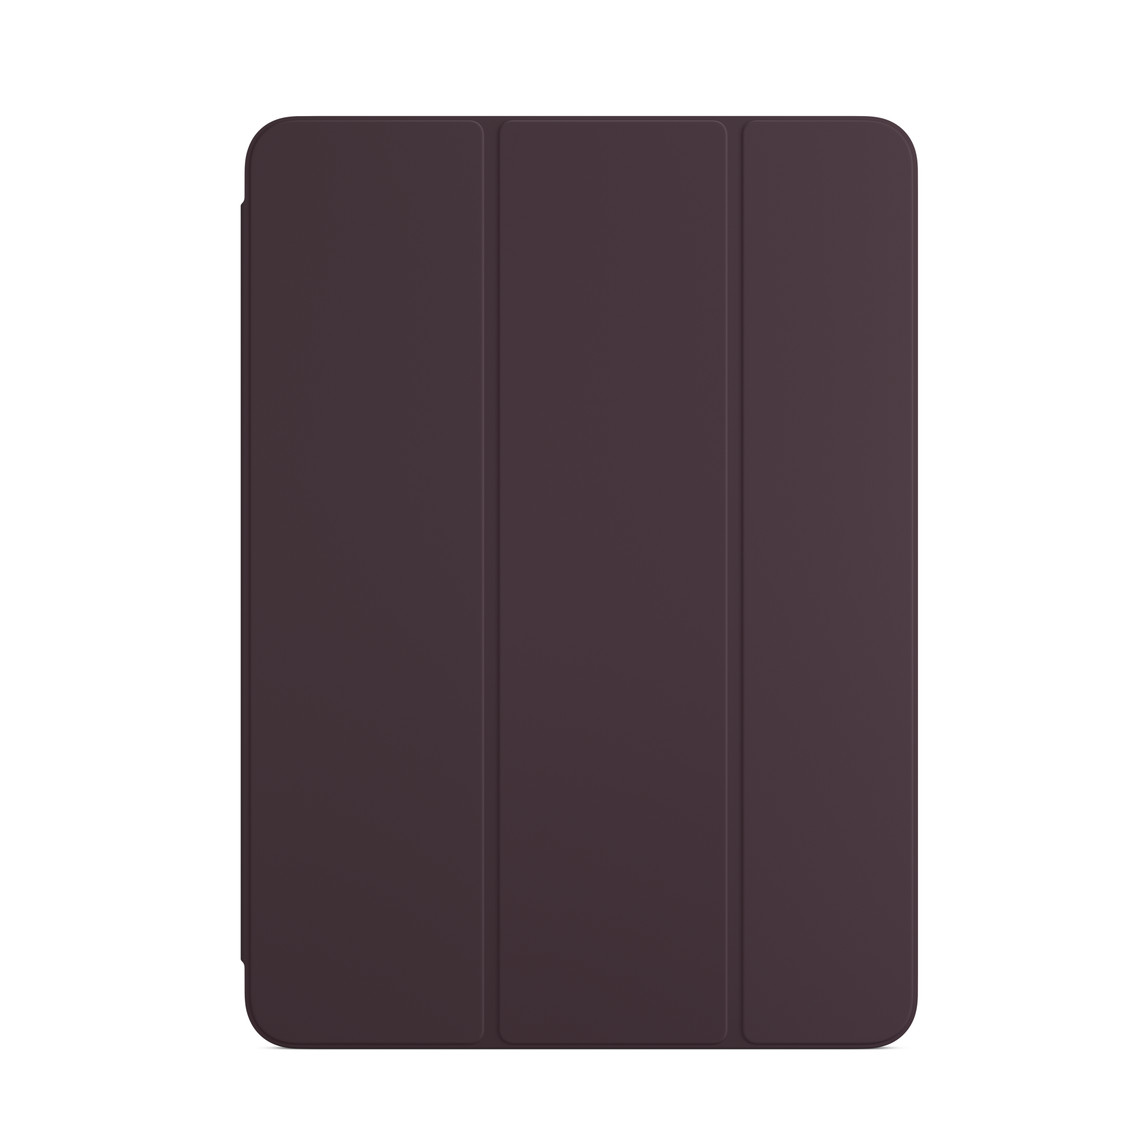 Smart Folio pour iPad Air (5ᵉ génération) en coloris Cerise noire.